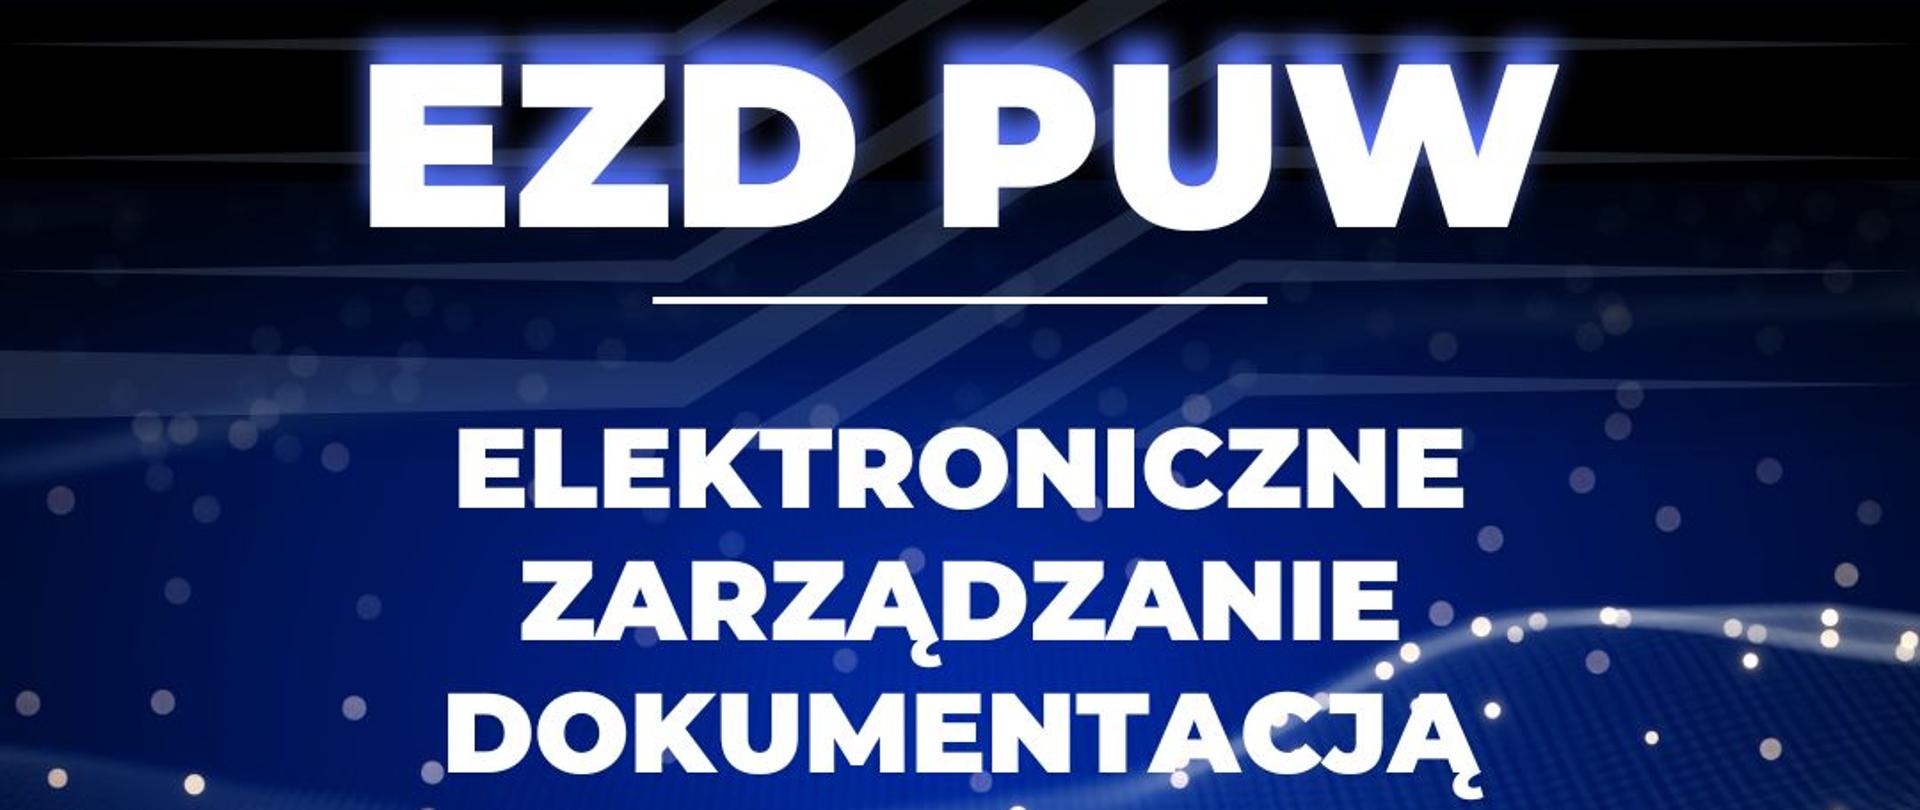 Napis : EZD PUW, Elektroniczne zarządzanie dokumentacją 